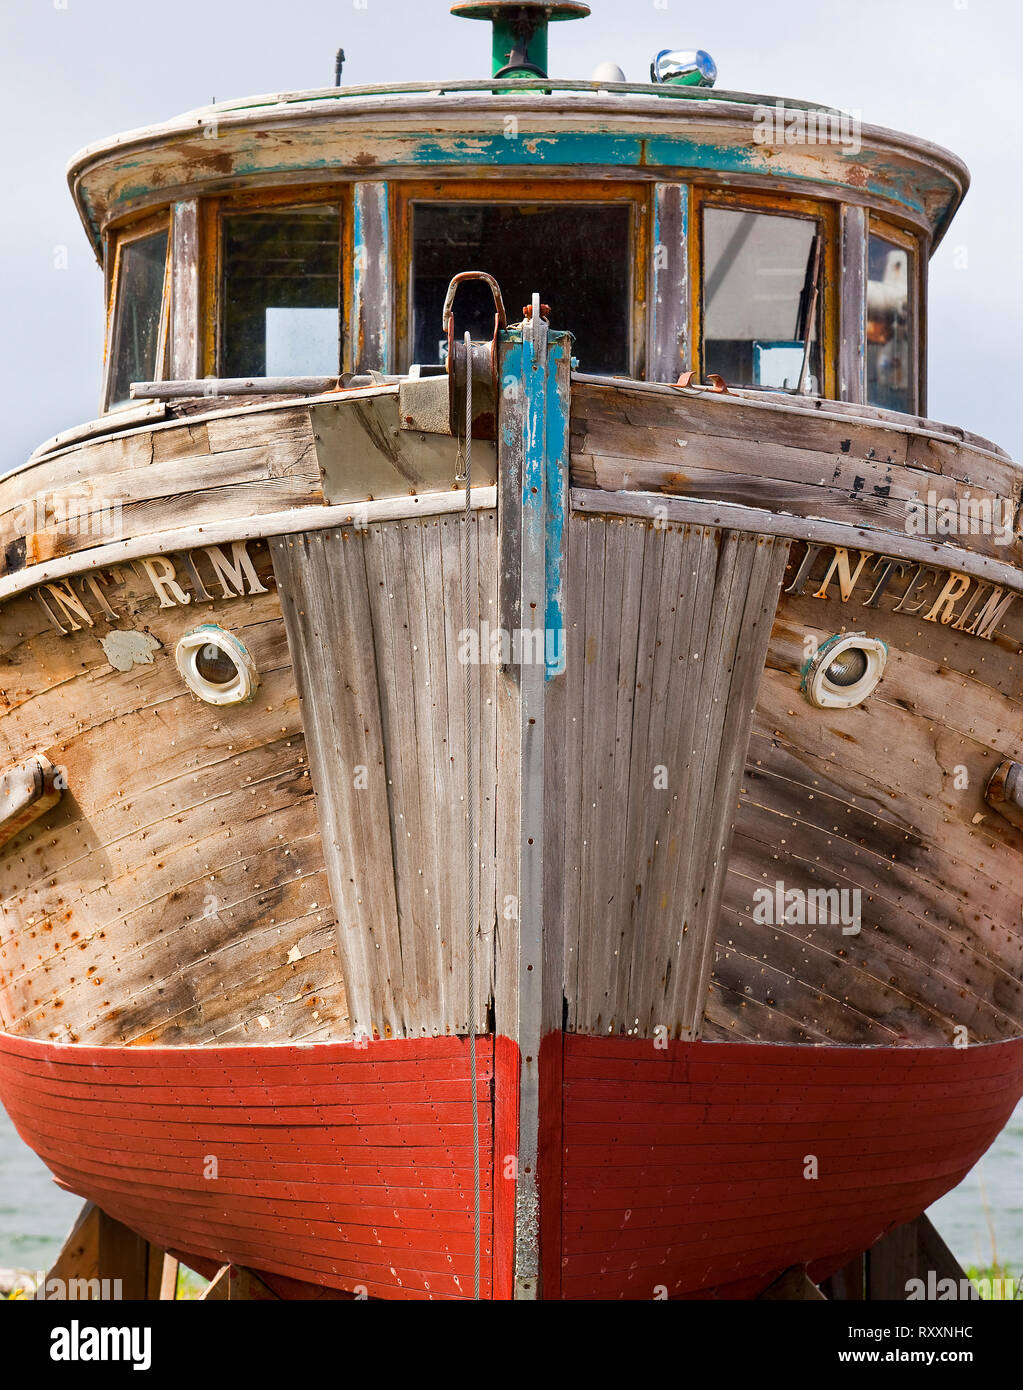 Vista frontale posteriore di un abandonned barca da pesca sul dock a secco su una spiaggia a Icy Strait Point, Alaska, STATI UNITI D'AMERICA Foto Stock